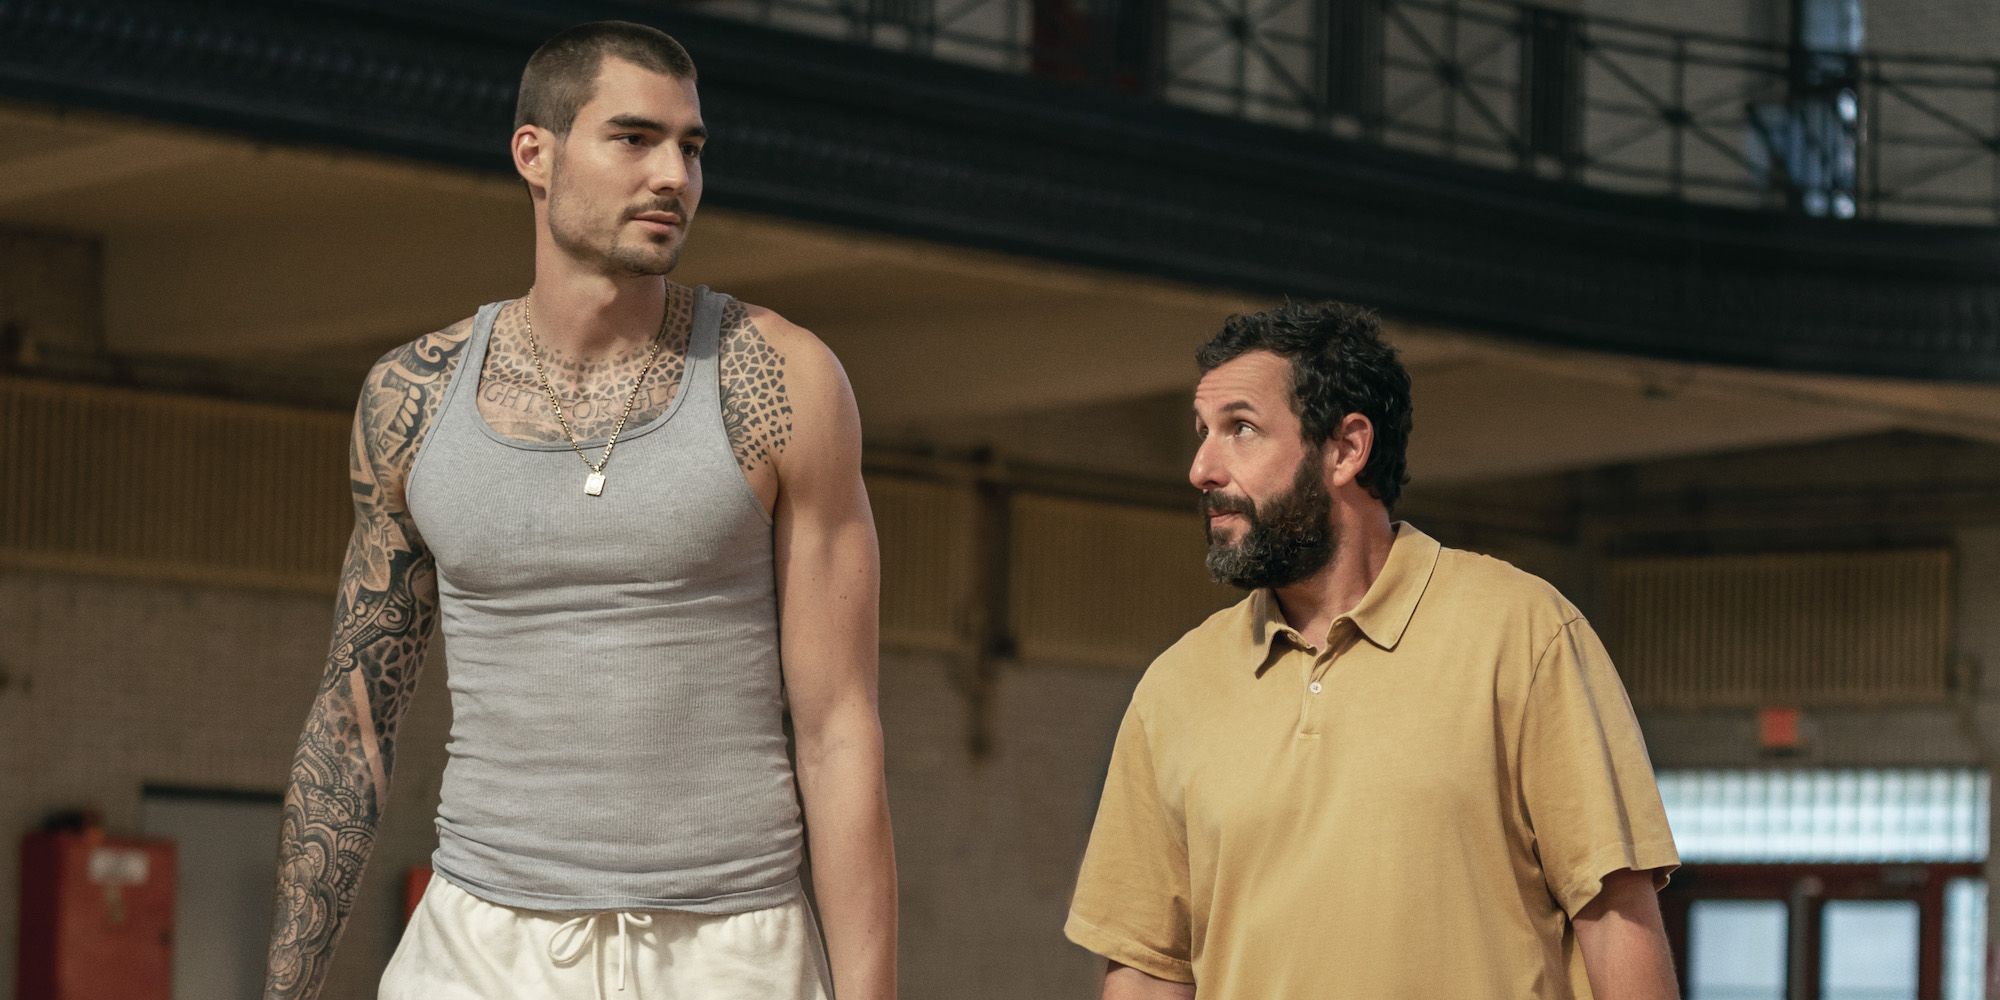 Juancho Hernangómez will have a 'major role' in Adam Sandler's next film,  “Hustle” - CelticsBlog